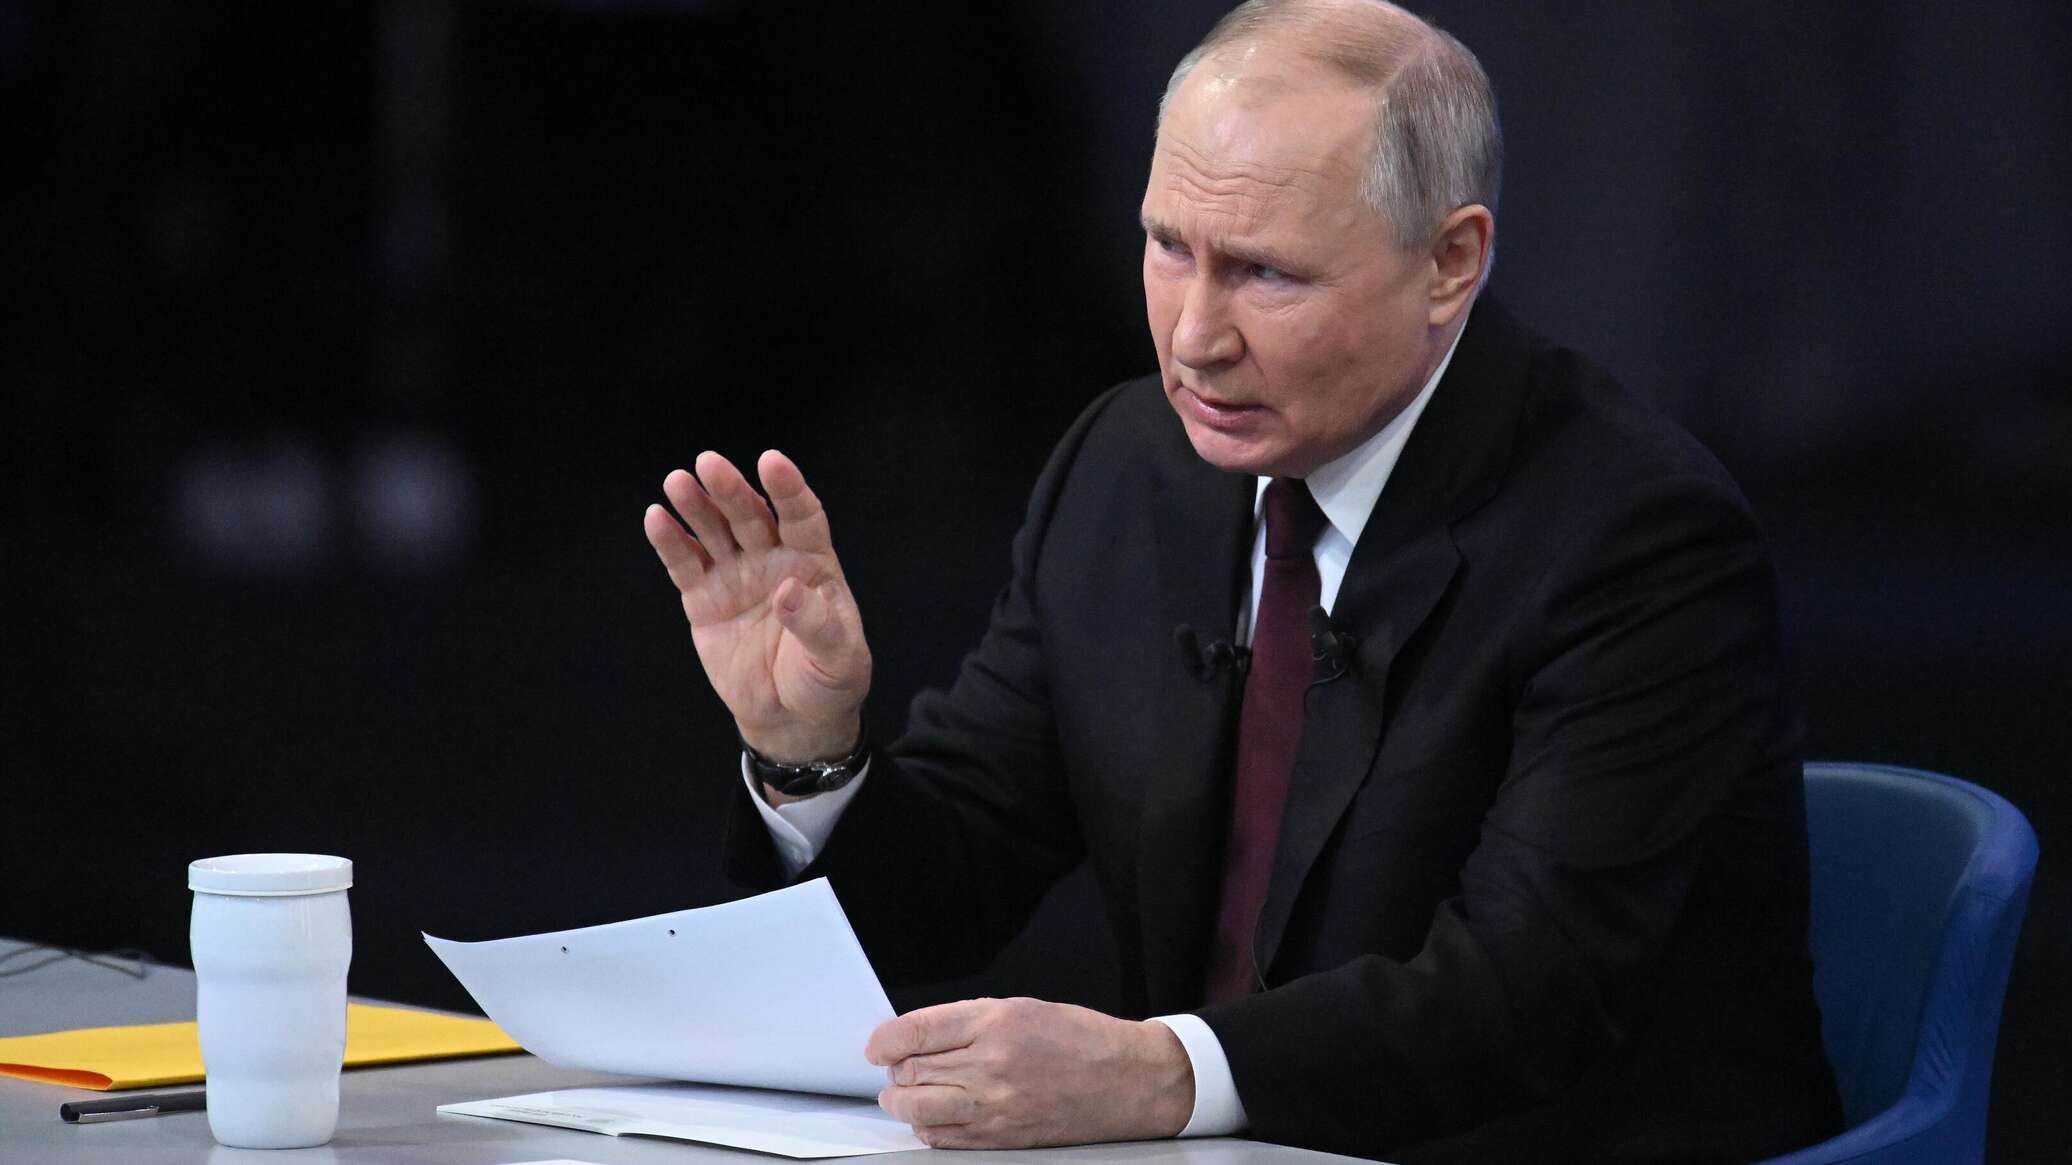 بوتين: أعداء روسيا وضعوا أنفسهم في الزاوية عندما رفضوا التفاوض معها